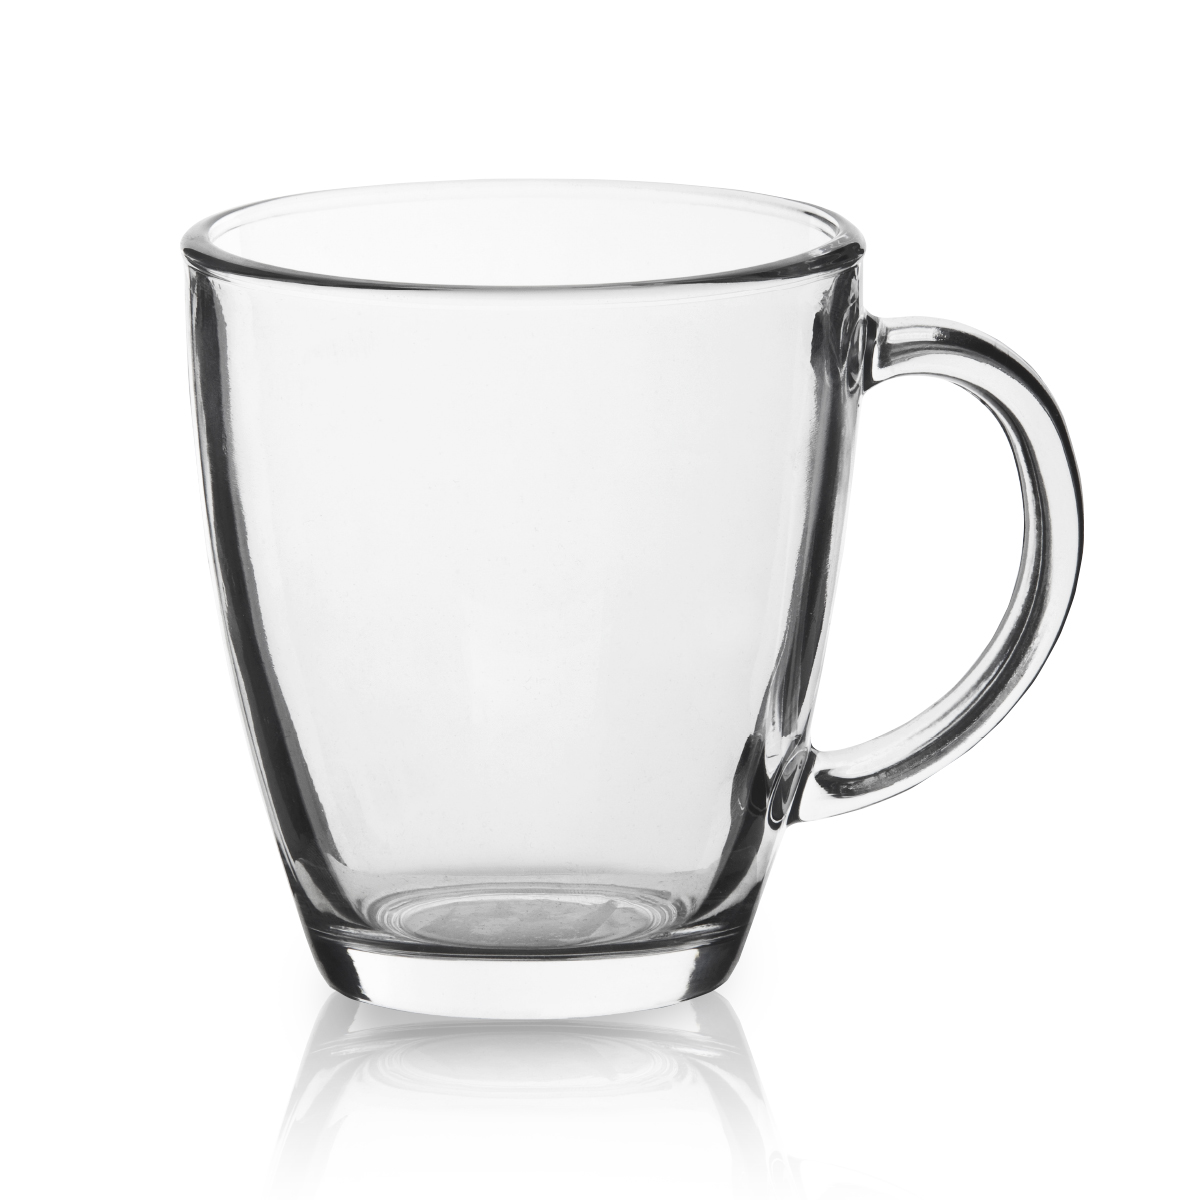 באריסטה - כוס זכוכית 360 מ”ל למשקה חם או קר.
ידית אחיזה.

